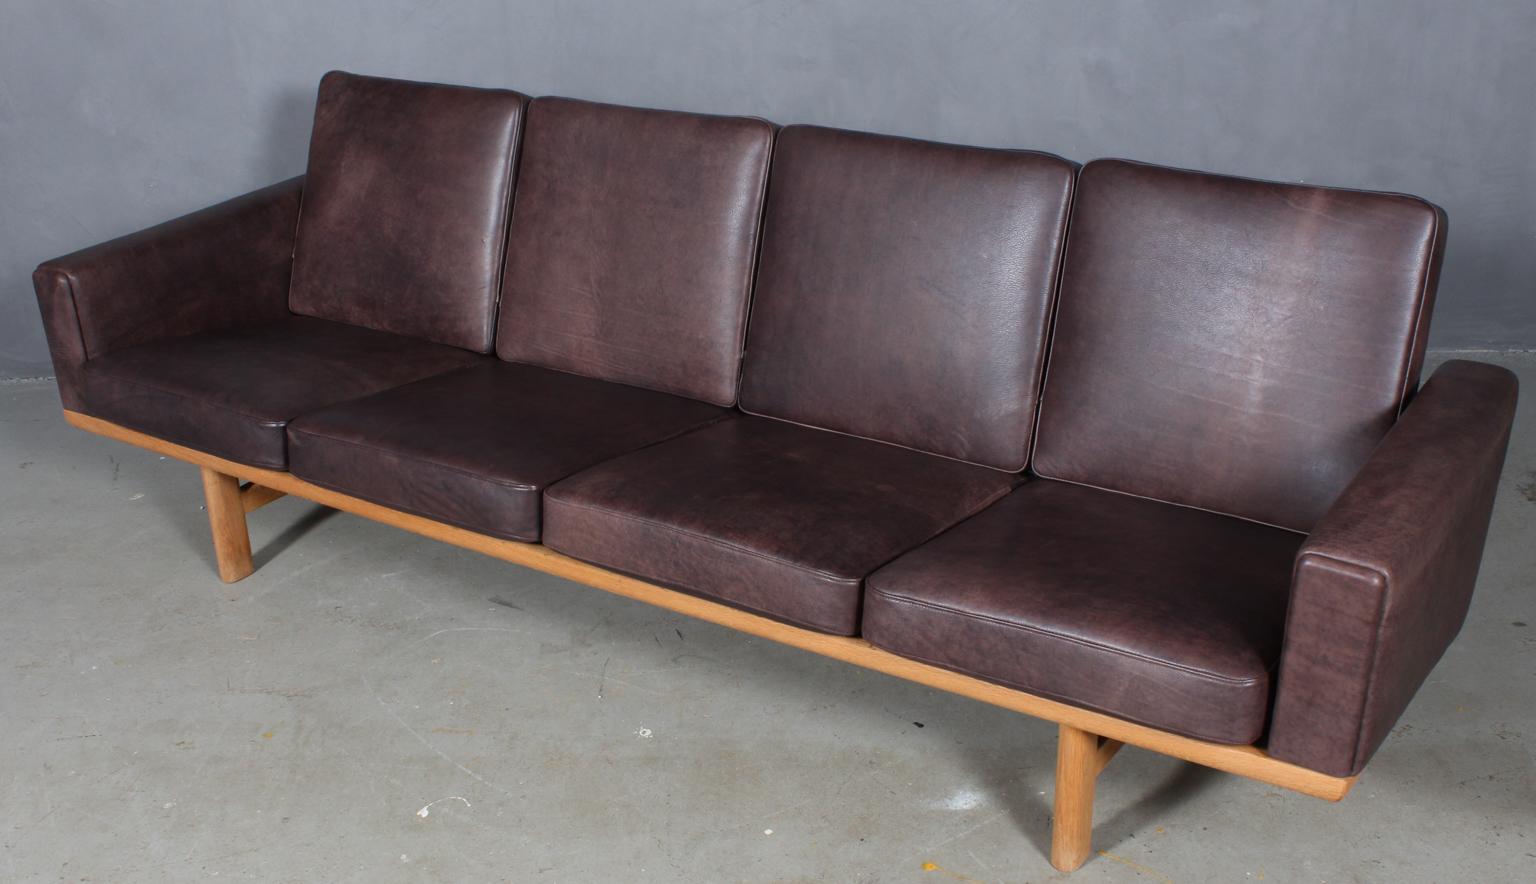 Hans J. Wegner Viersitzer-Sofa, neu gepolstert mit Mokka-Anilinleder.

Original Epeda-Kissen.

Rahmen aus massiver Eiche.

Modell 236/4, hergestellt von GETAMA.